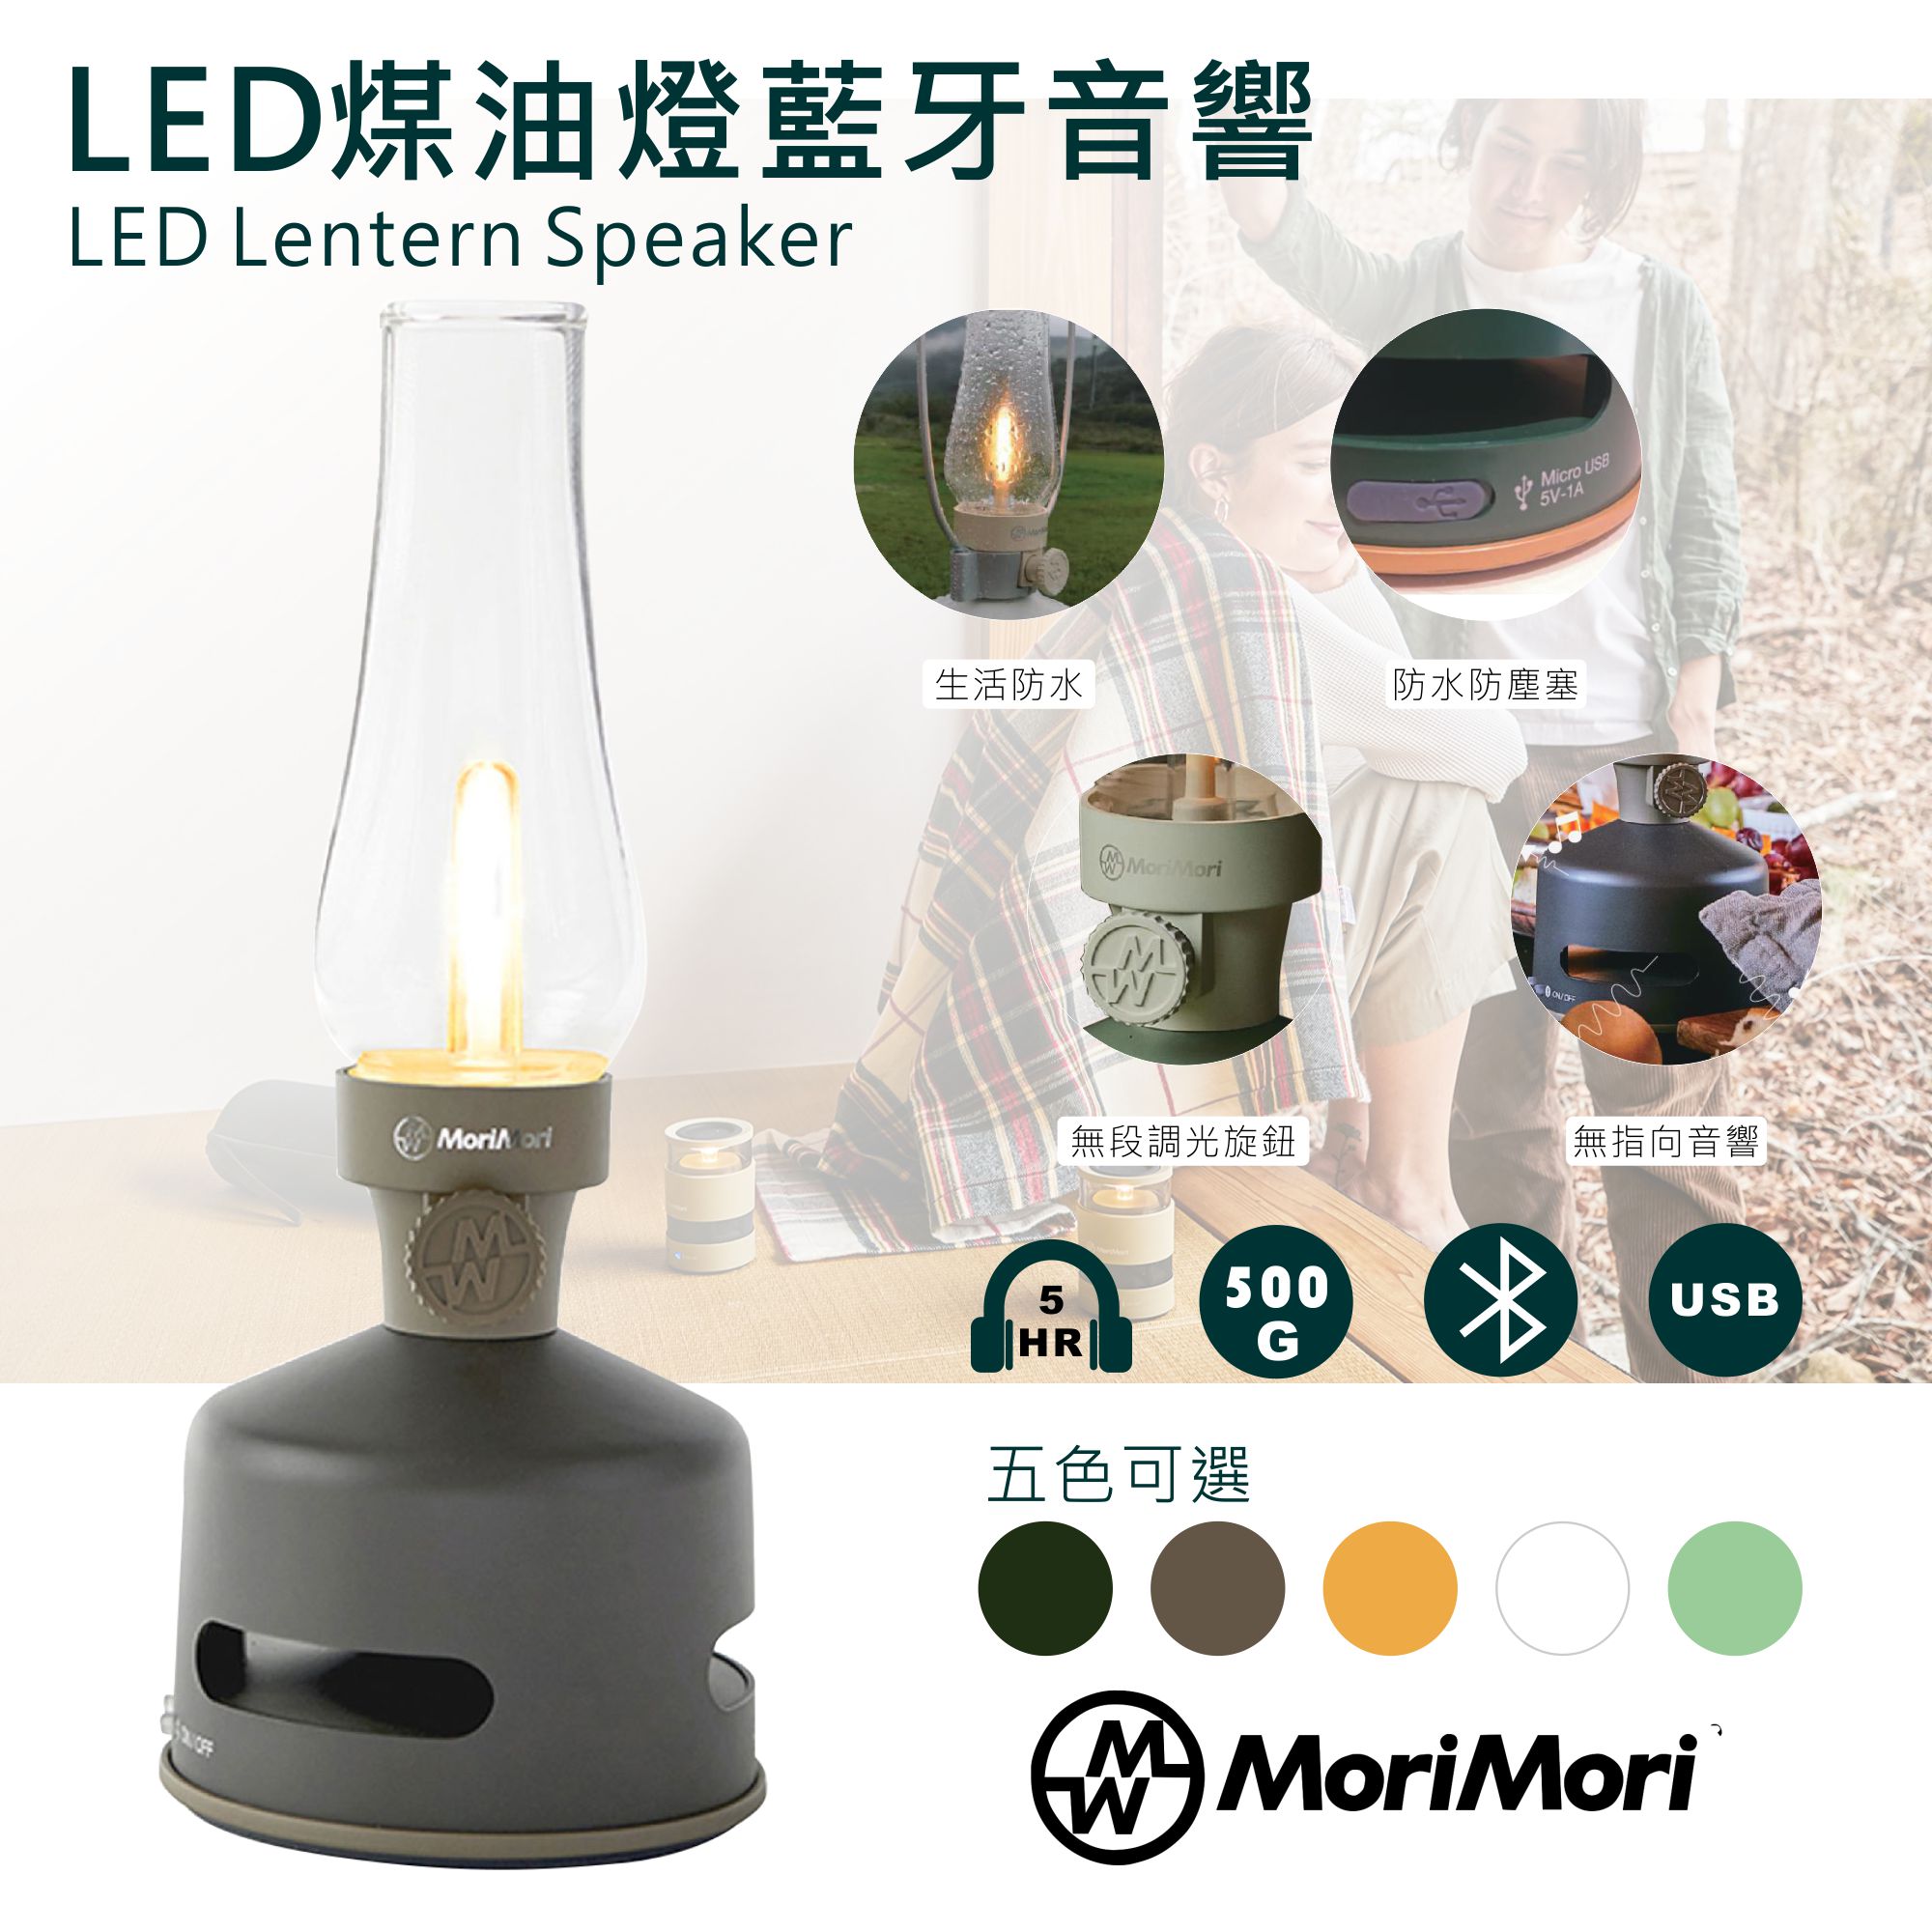 【日本】MoriMori藍芽喇叭燈(深棕) 多功能LED燈 小夜燈 無段調光 防水 多功能音響 氣氛燈 高音質音響